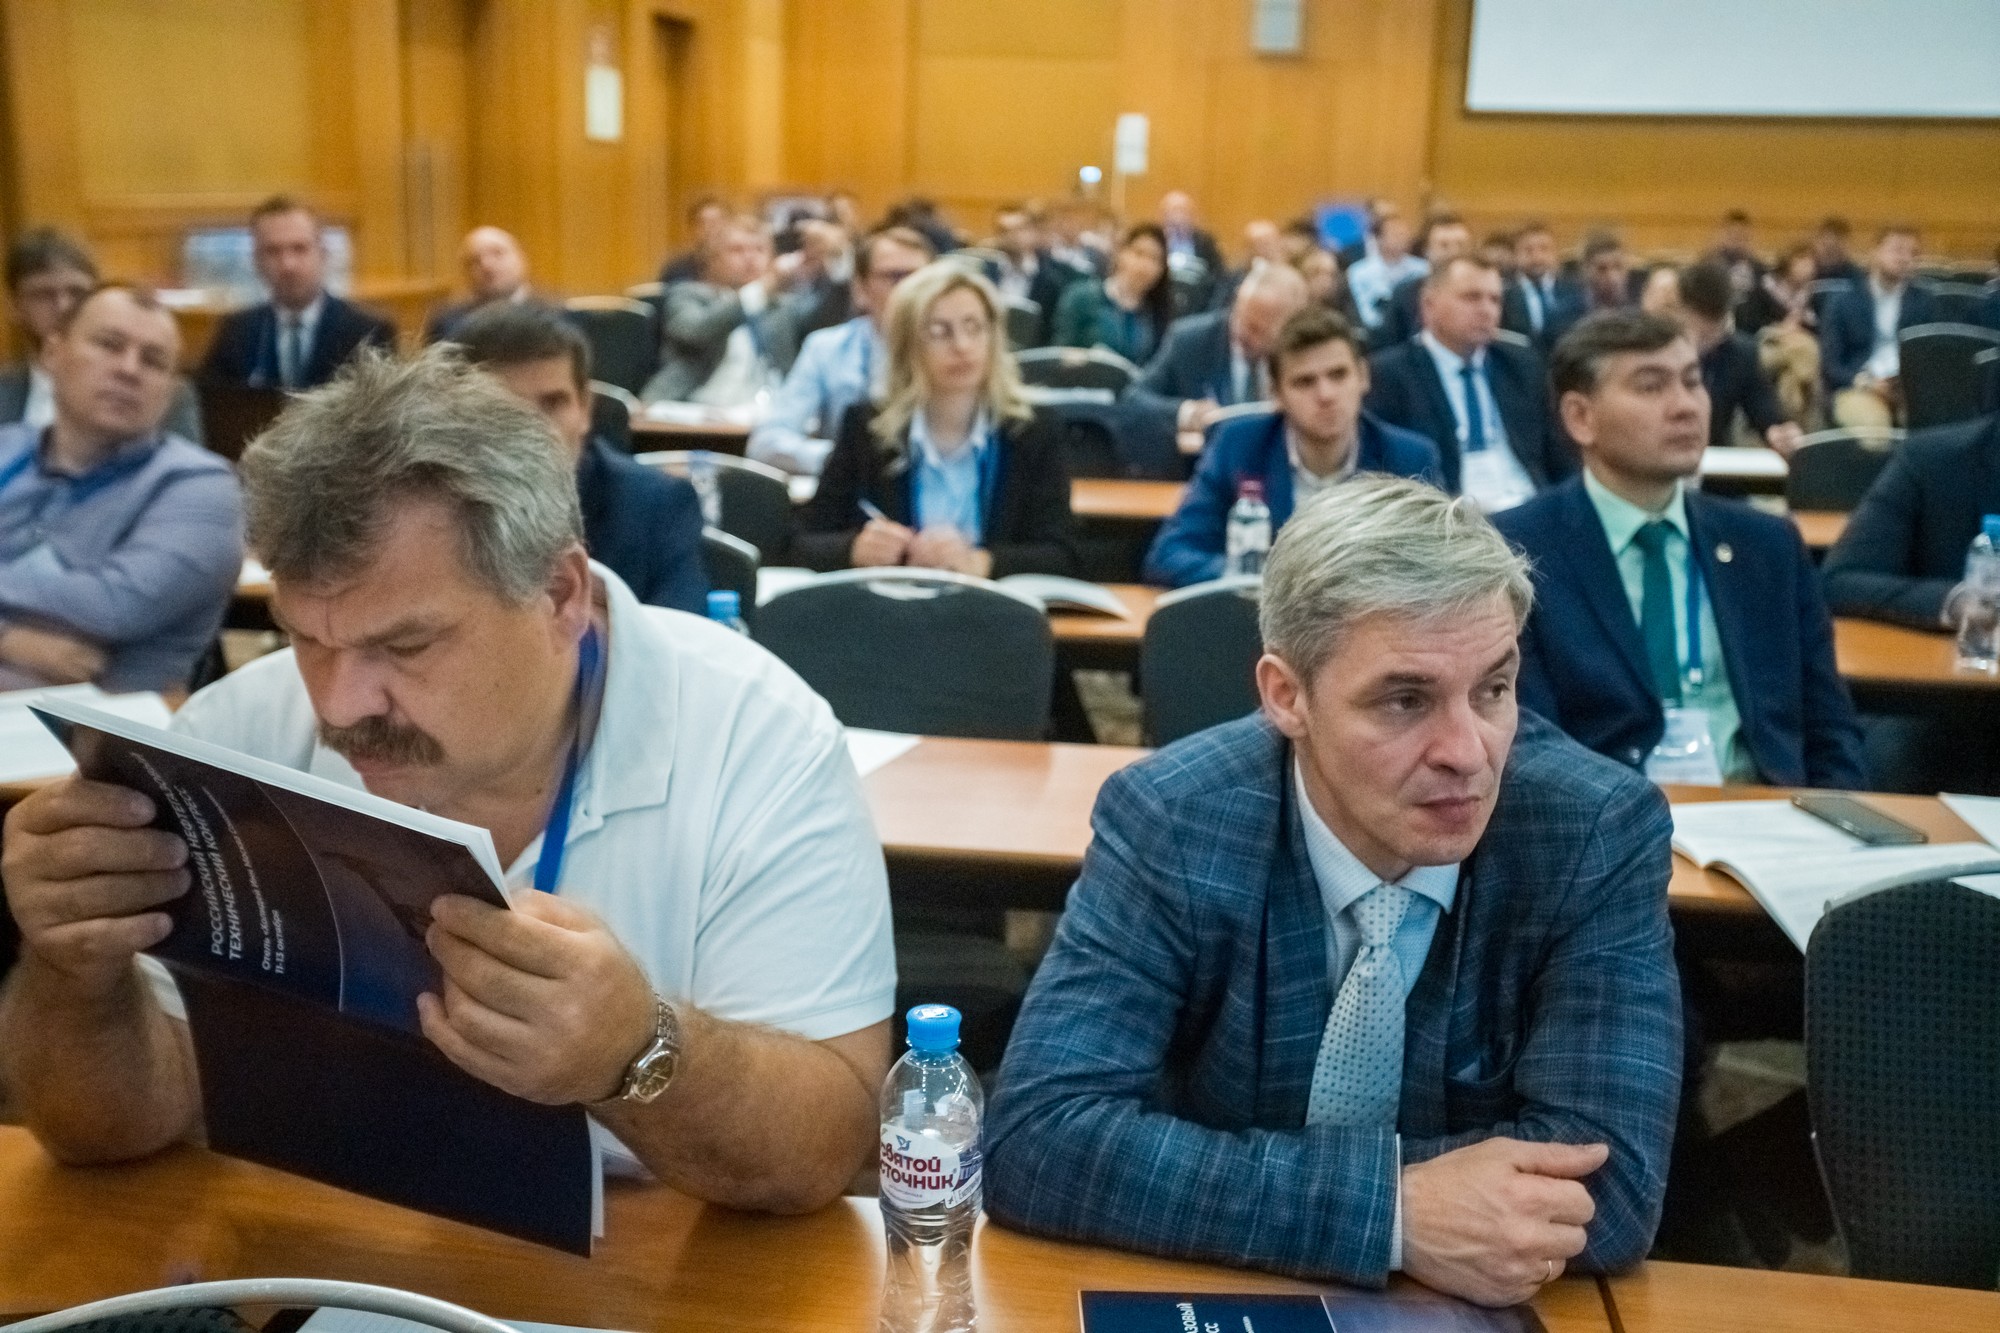 Российский нефтегазовый технический конгресс пройдет с 31 октября -по 2 ноября 2023 в Москве